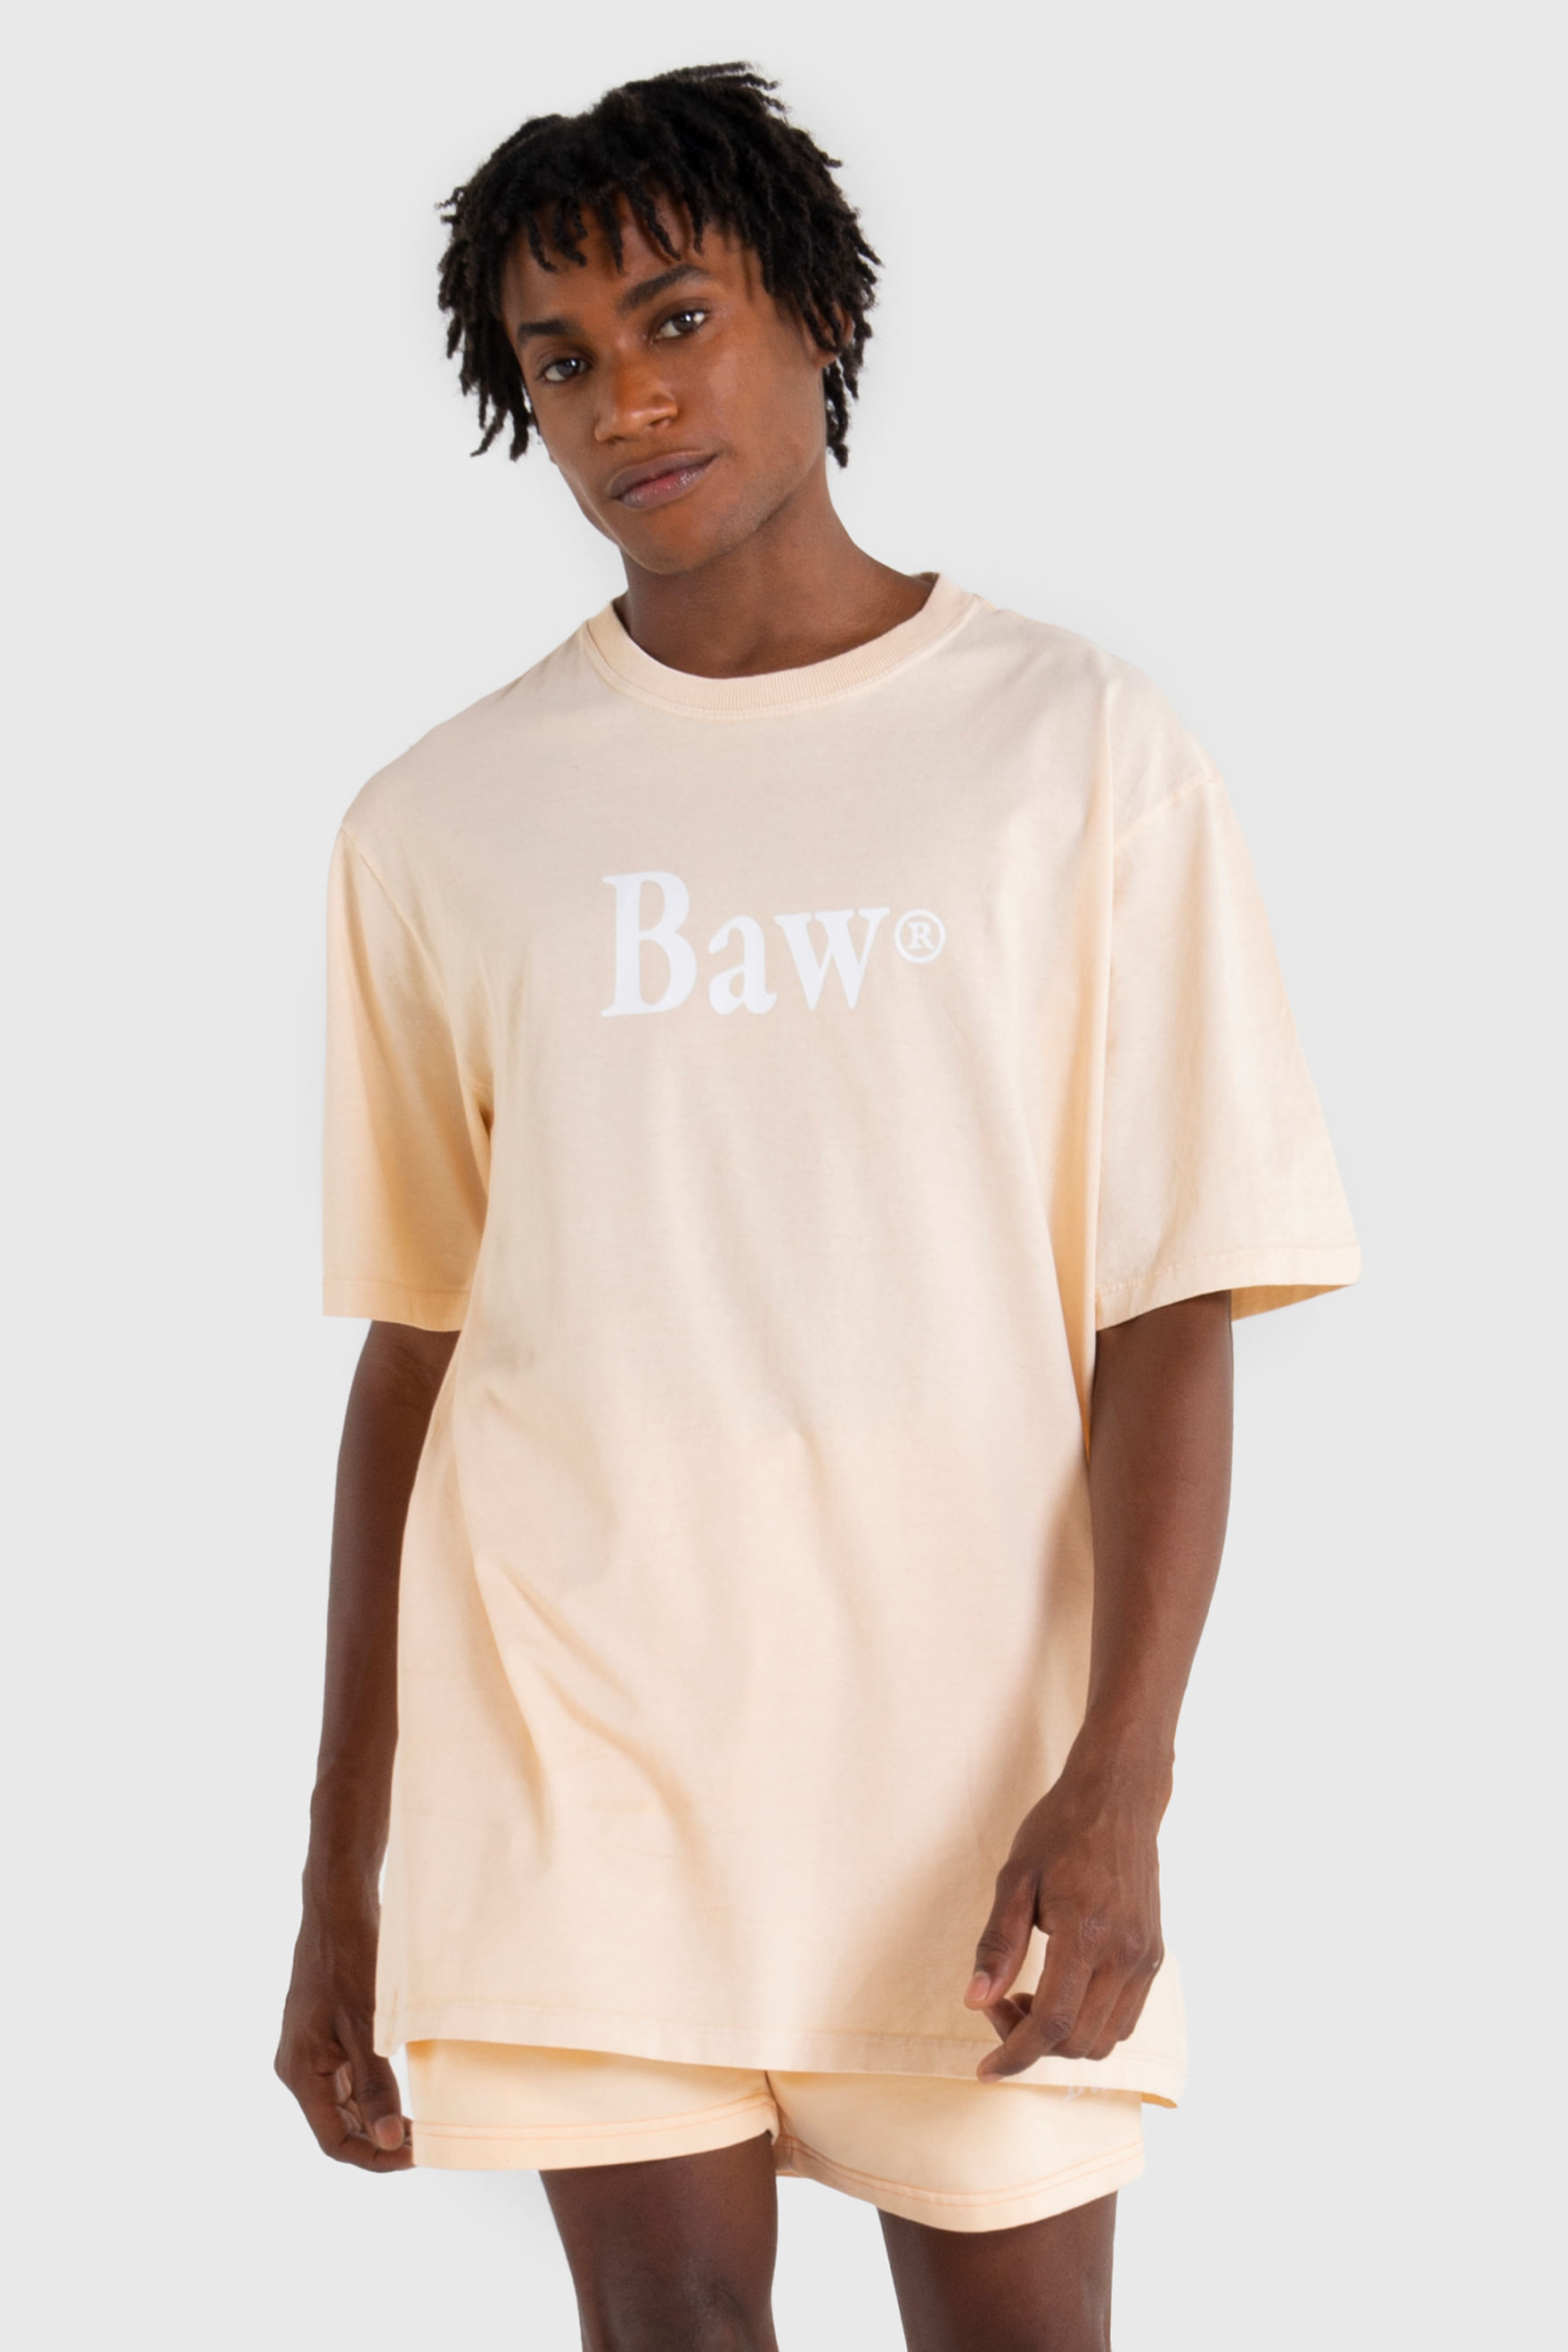 Camiseta Baw